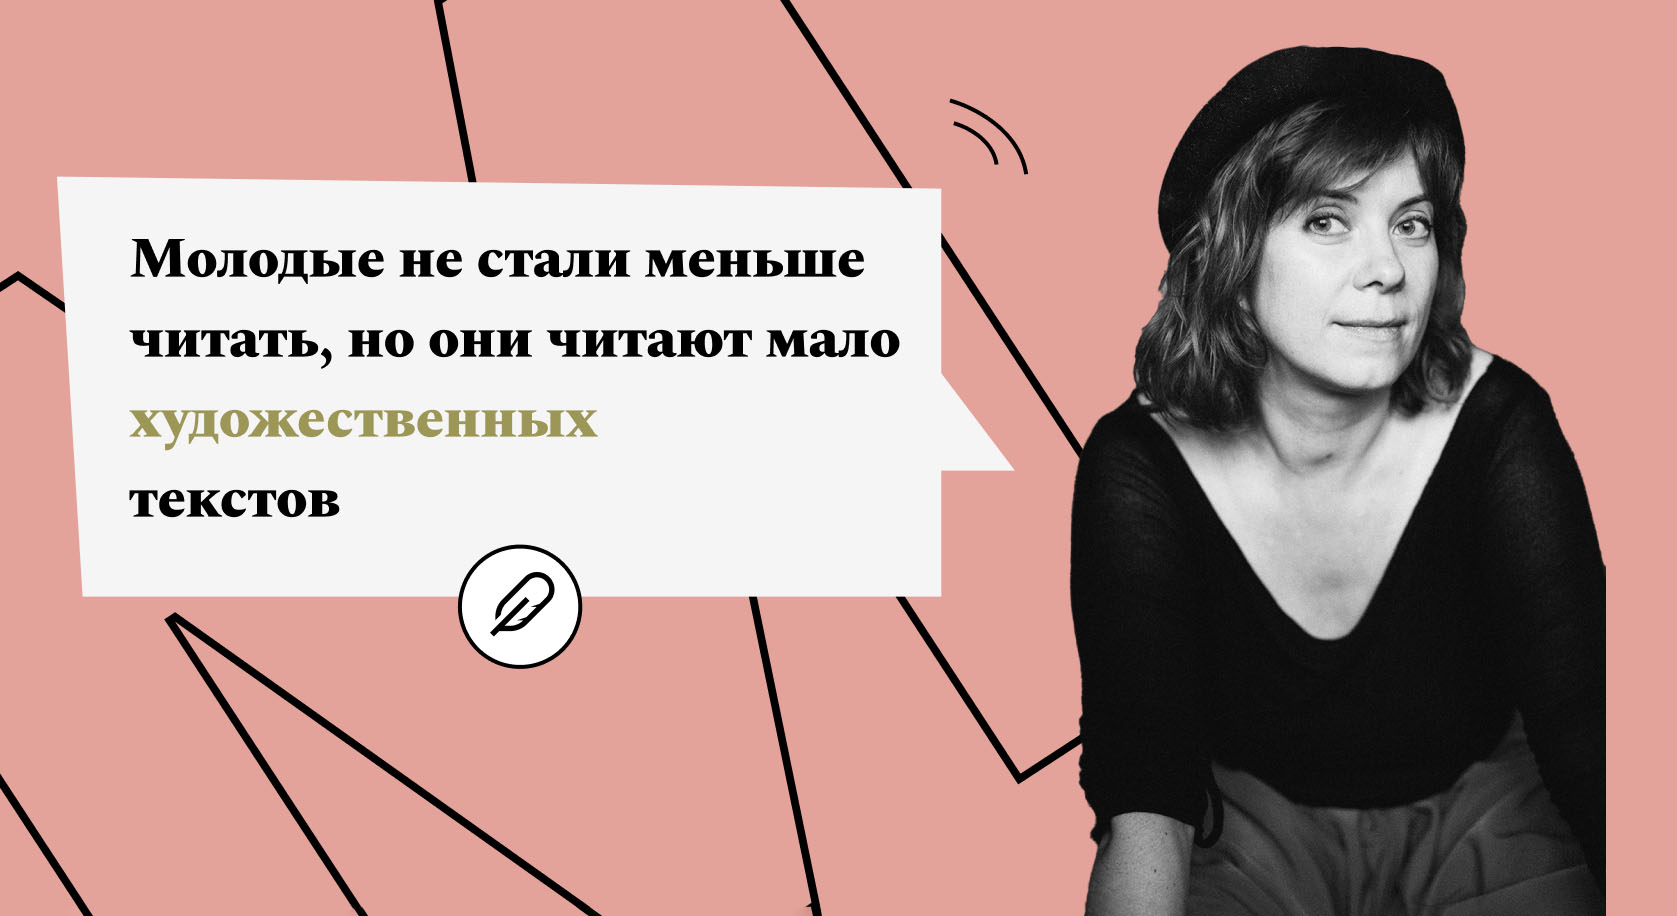 Мария Ровинская: «В лексиконе молодежи мало слов для выражения сложных эмоций» 